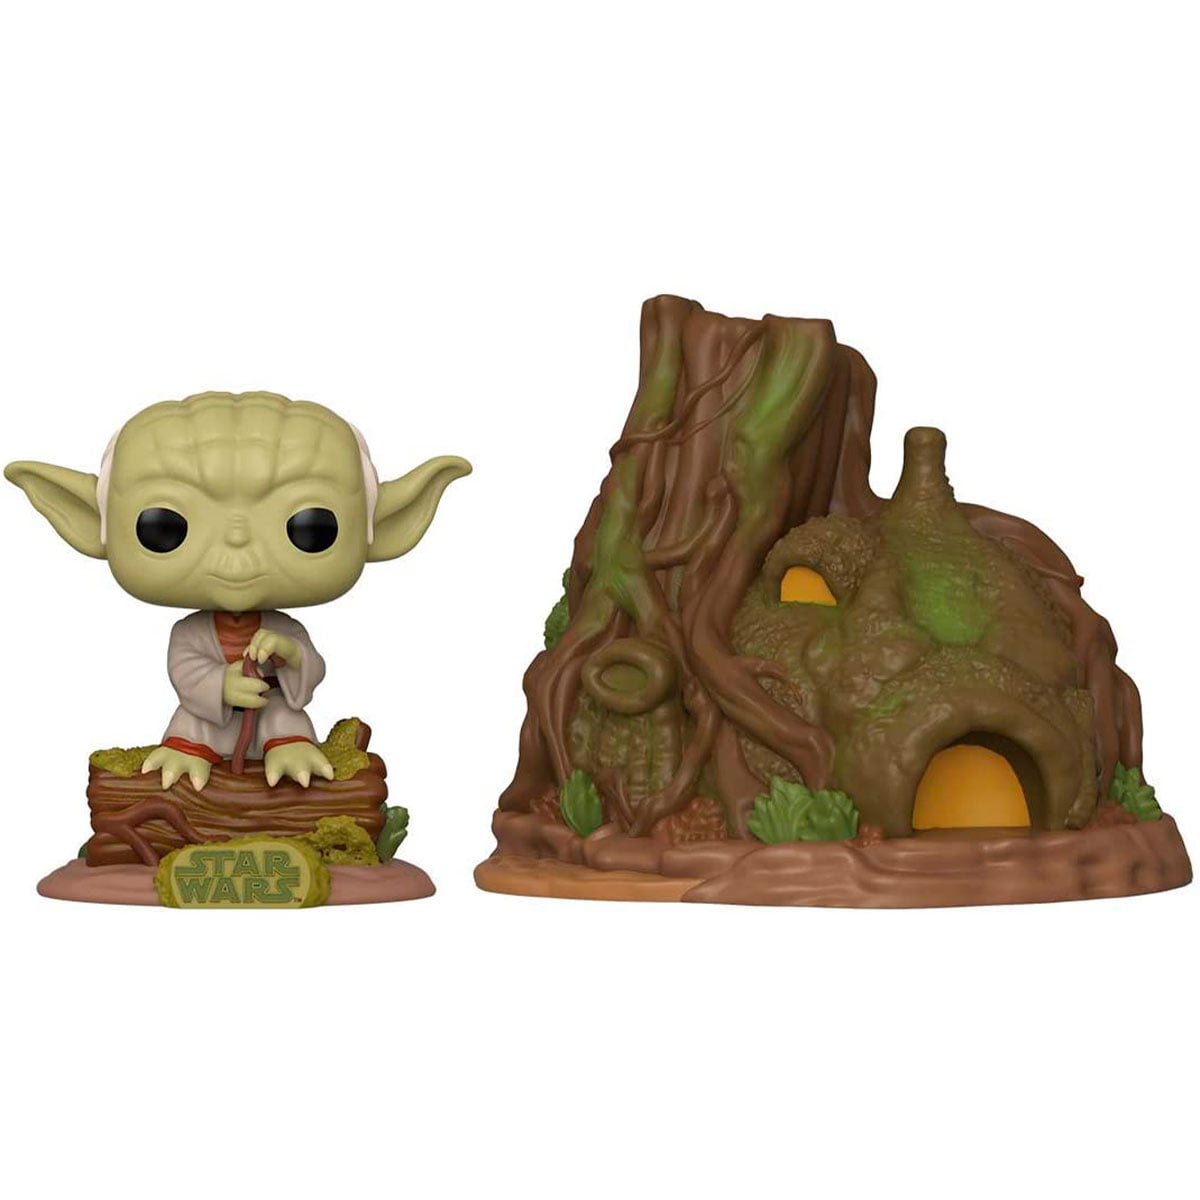 Funko Pop Star Wars Dagobah Yoda with Hut 11